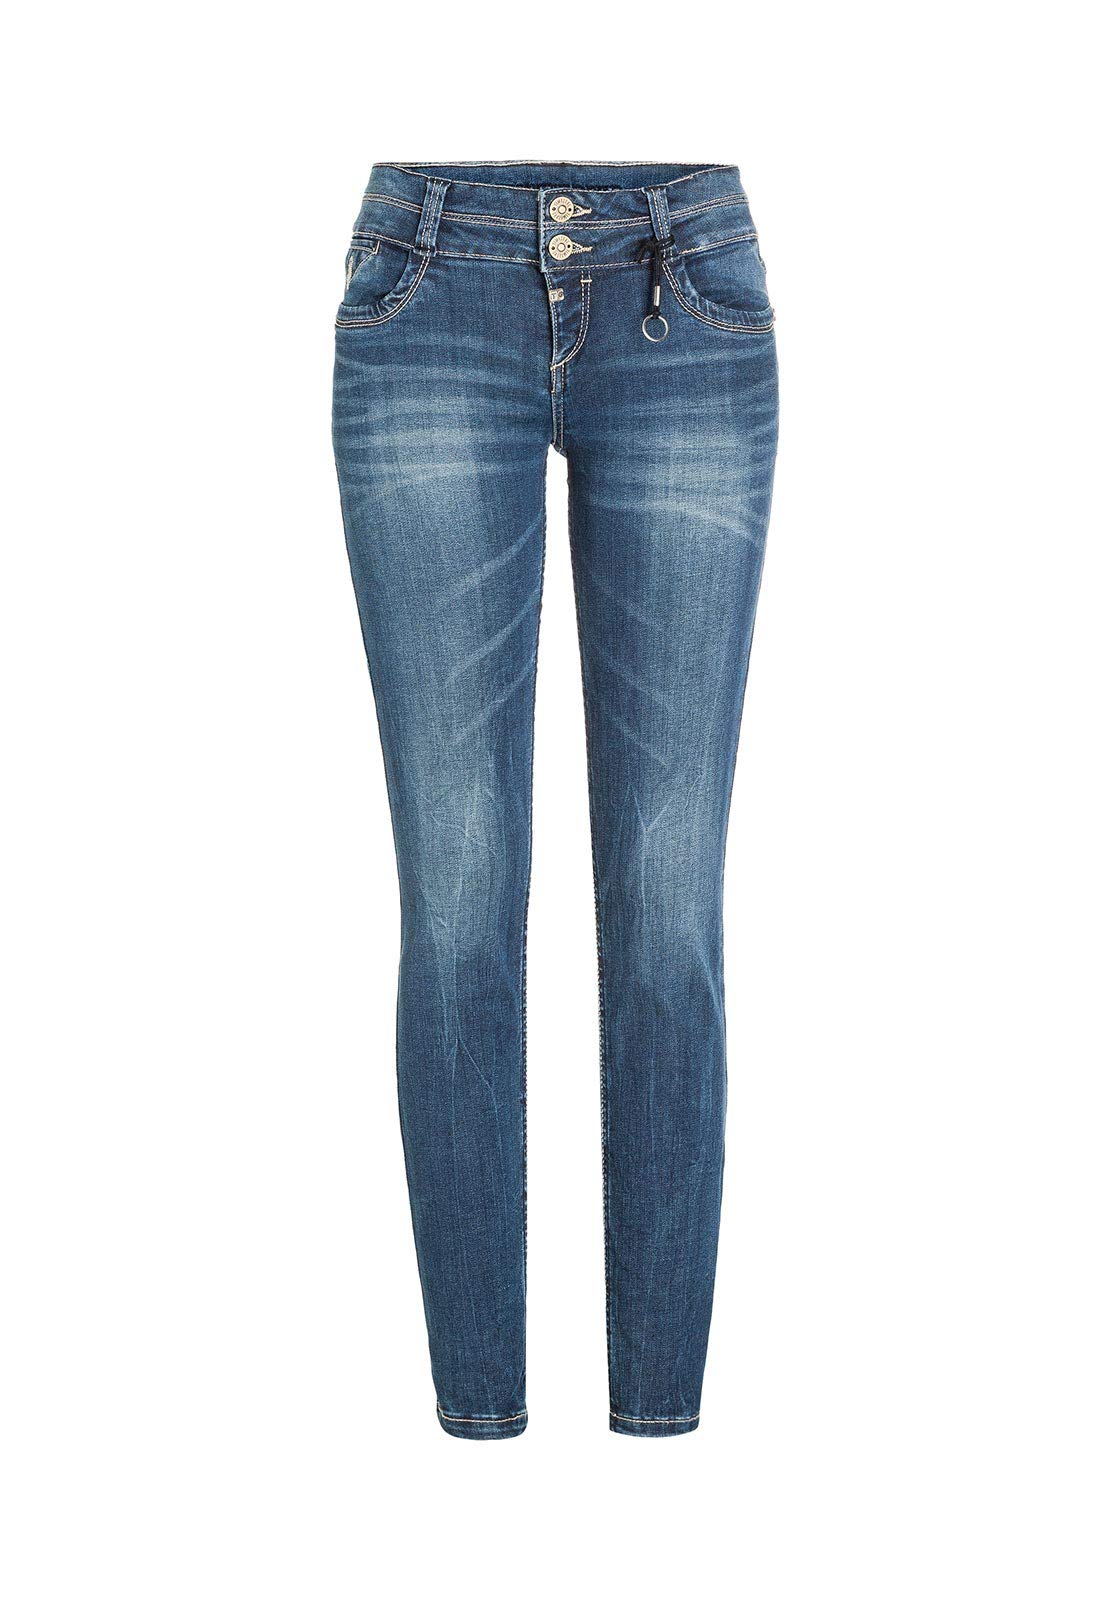 Timezone Damen Enyatz Slim Jeans, Blau (Blue Royal Wash 3065), 28W / 34L EU